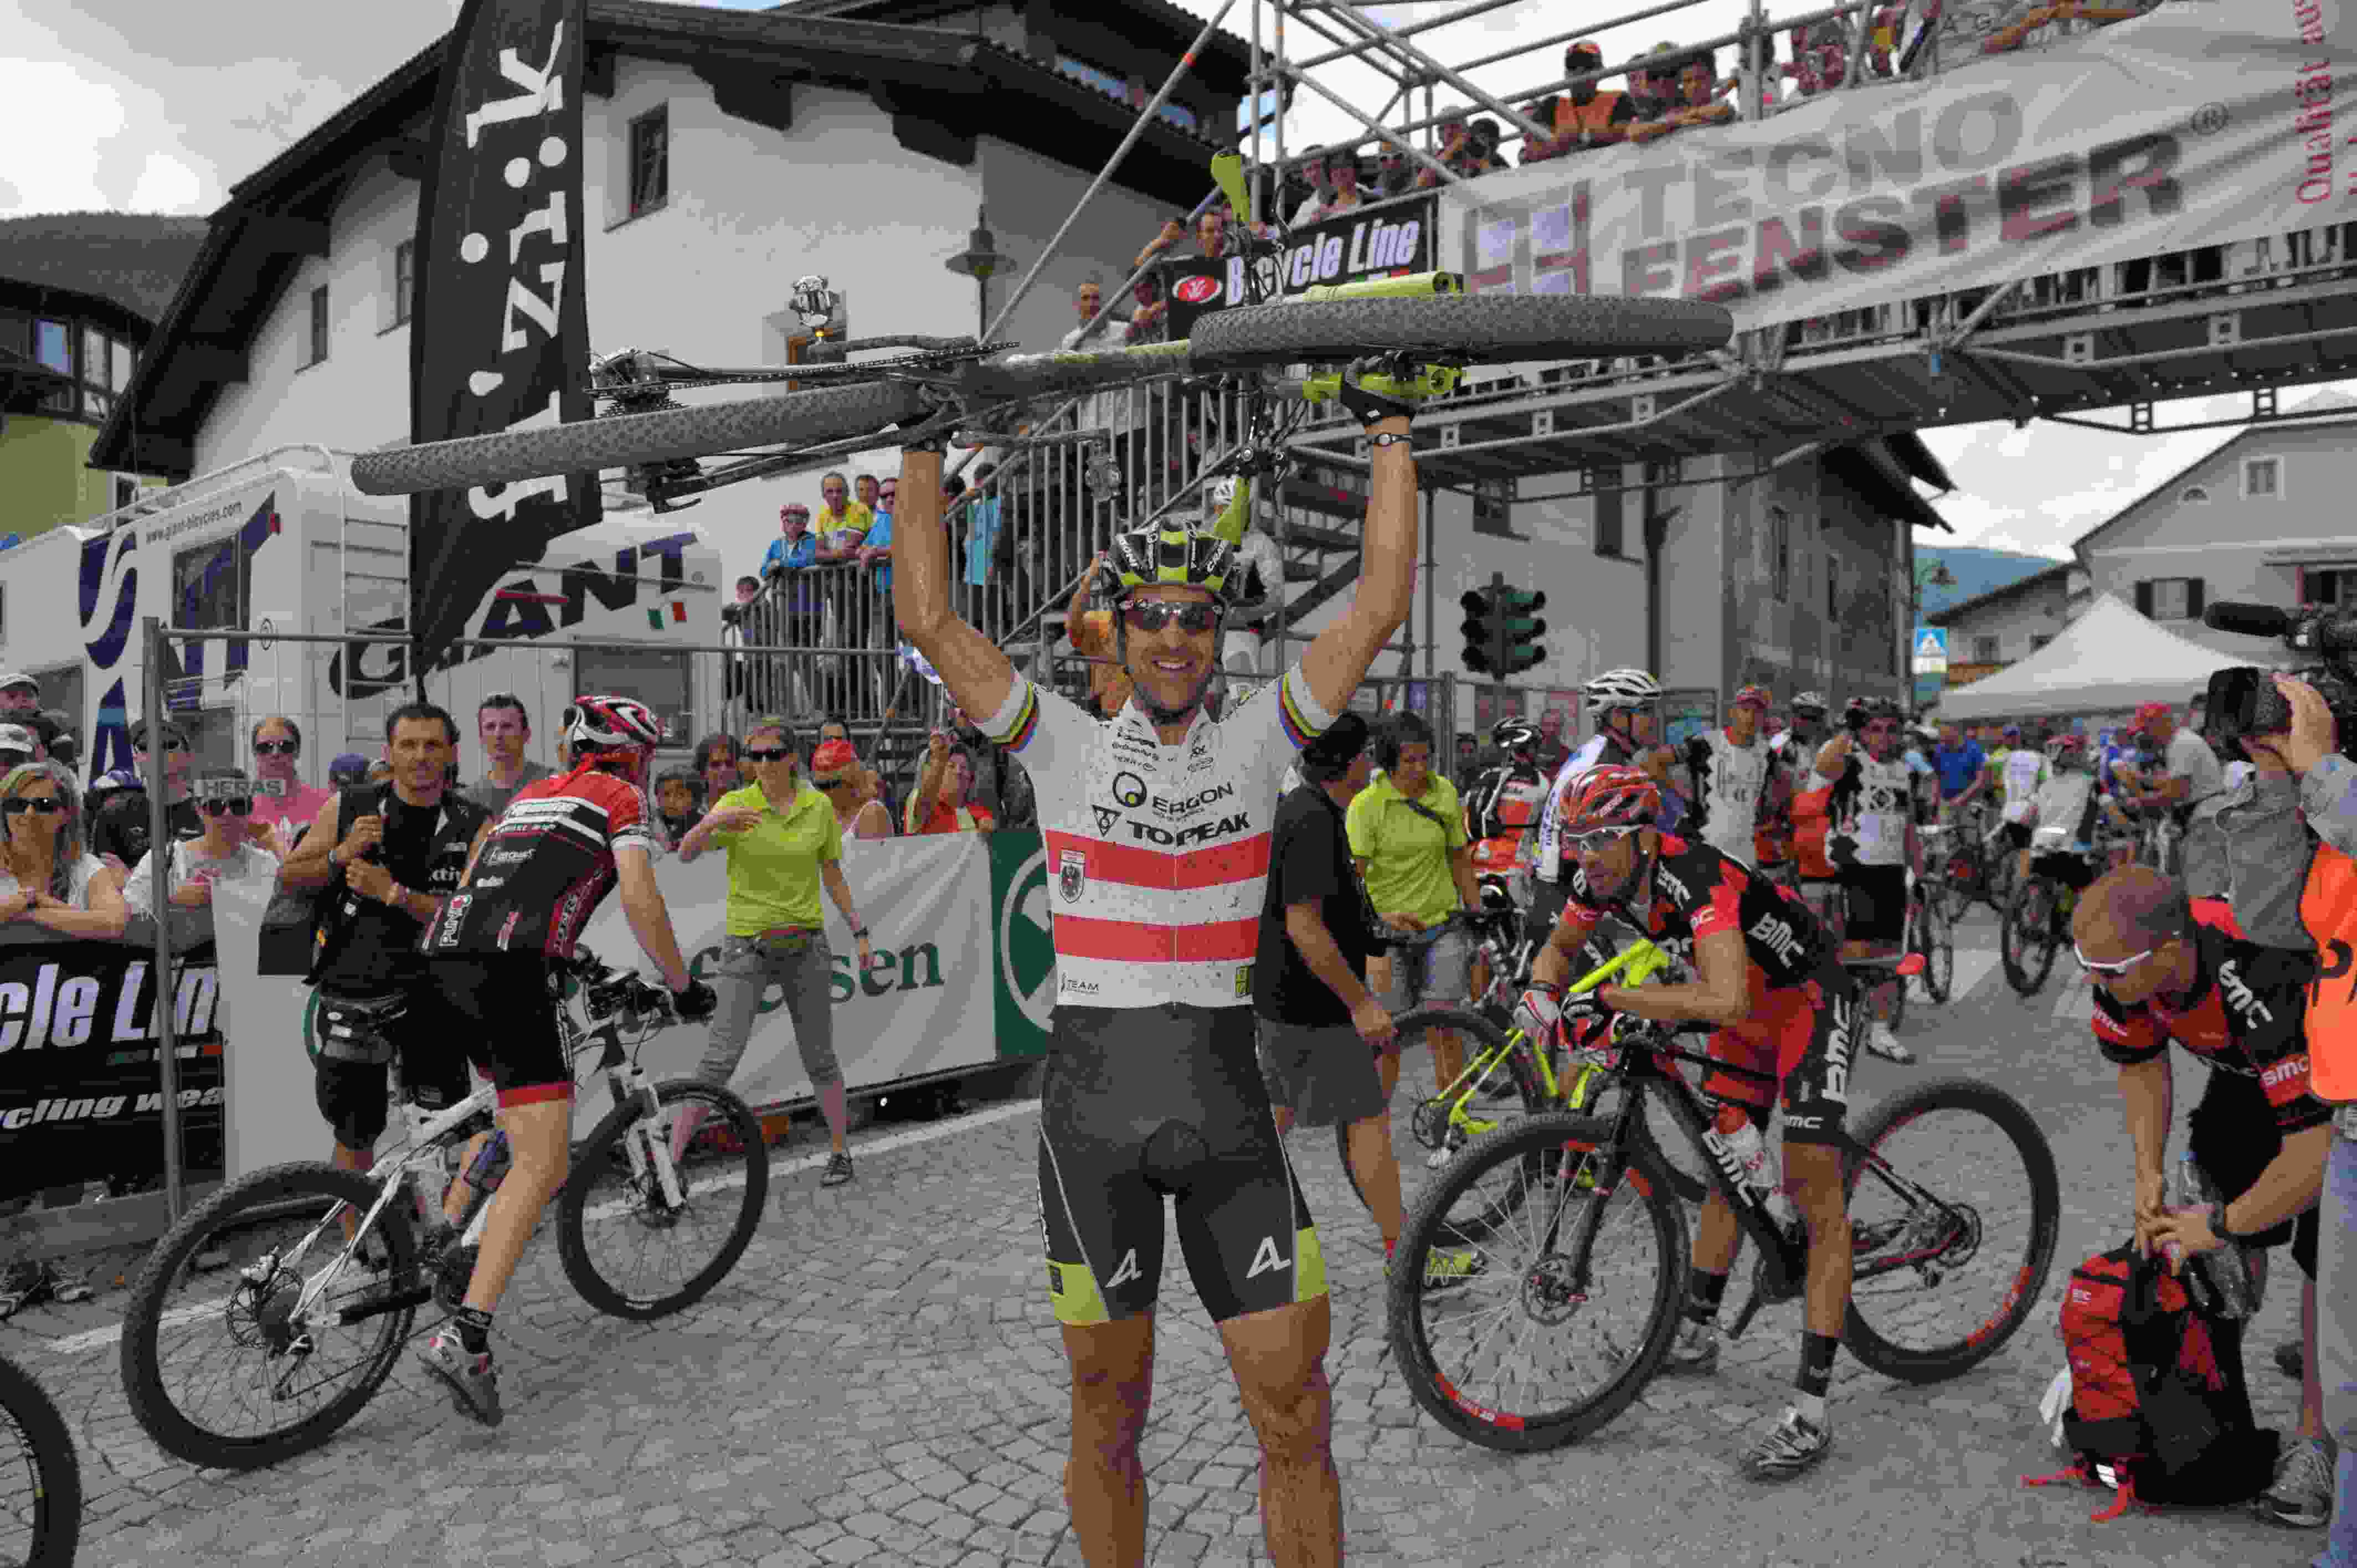 Südtirol Dolomiti Superbike: Al via l’élite mondiale – Prima gara dopo i Campionati del Mondo – I medagliati meditano sulle possibili rivincite – I favoriti.